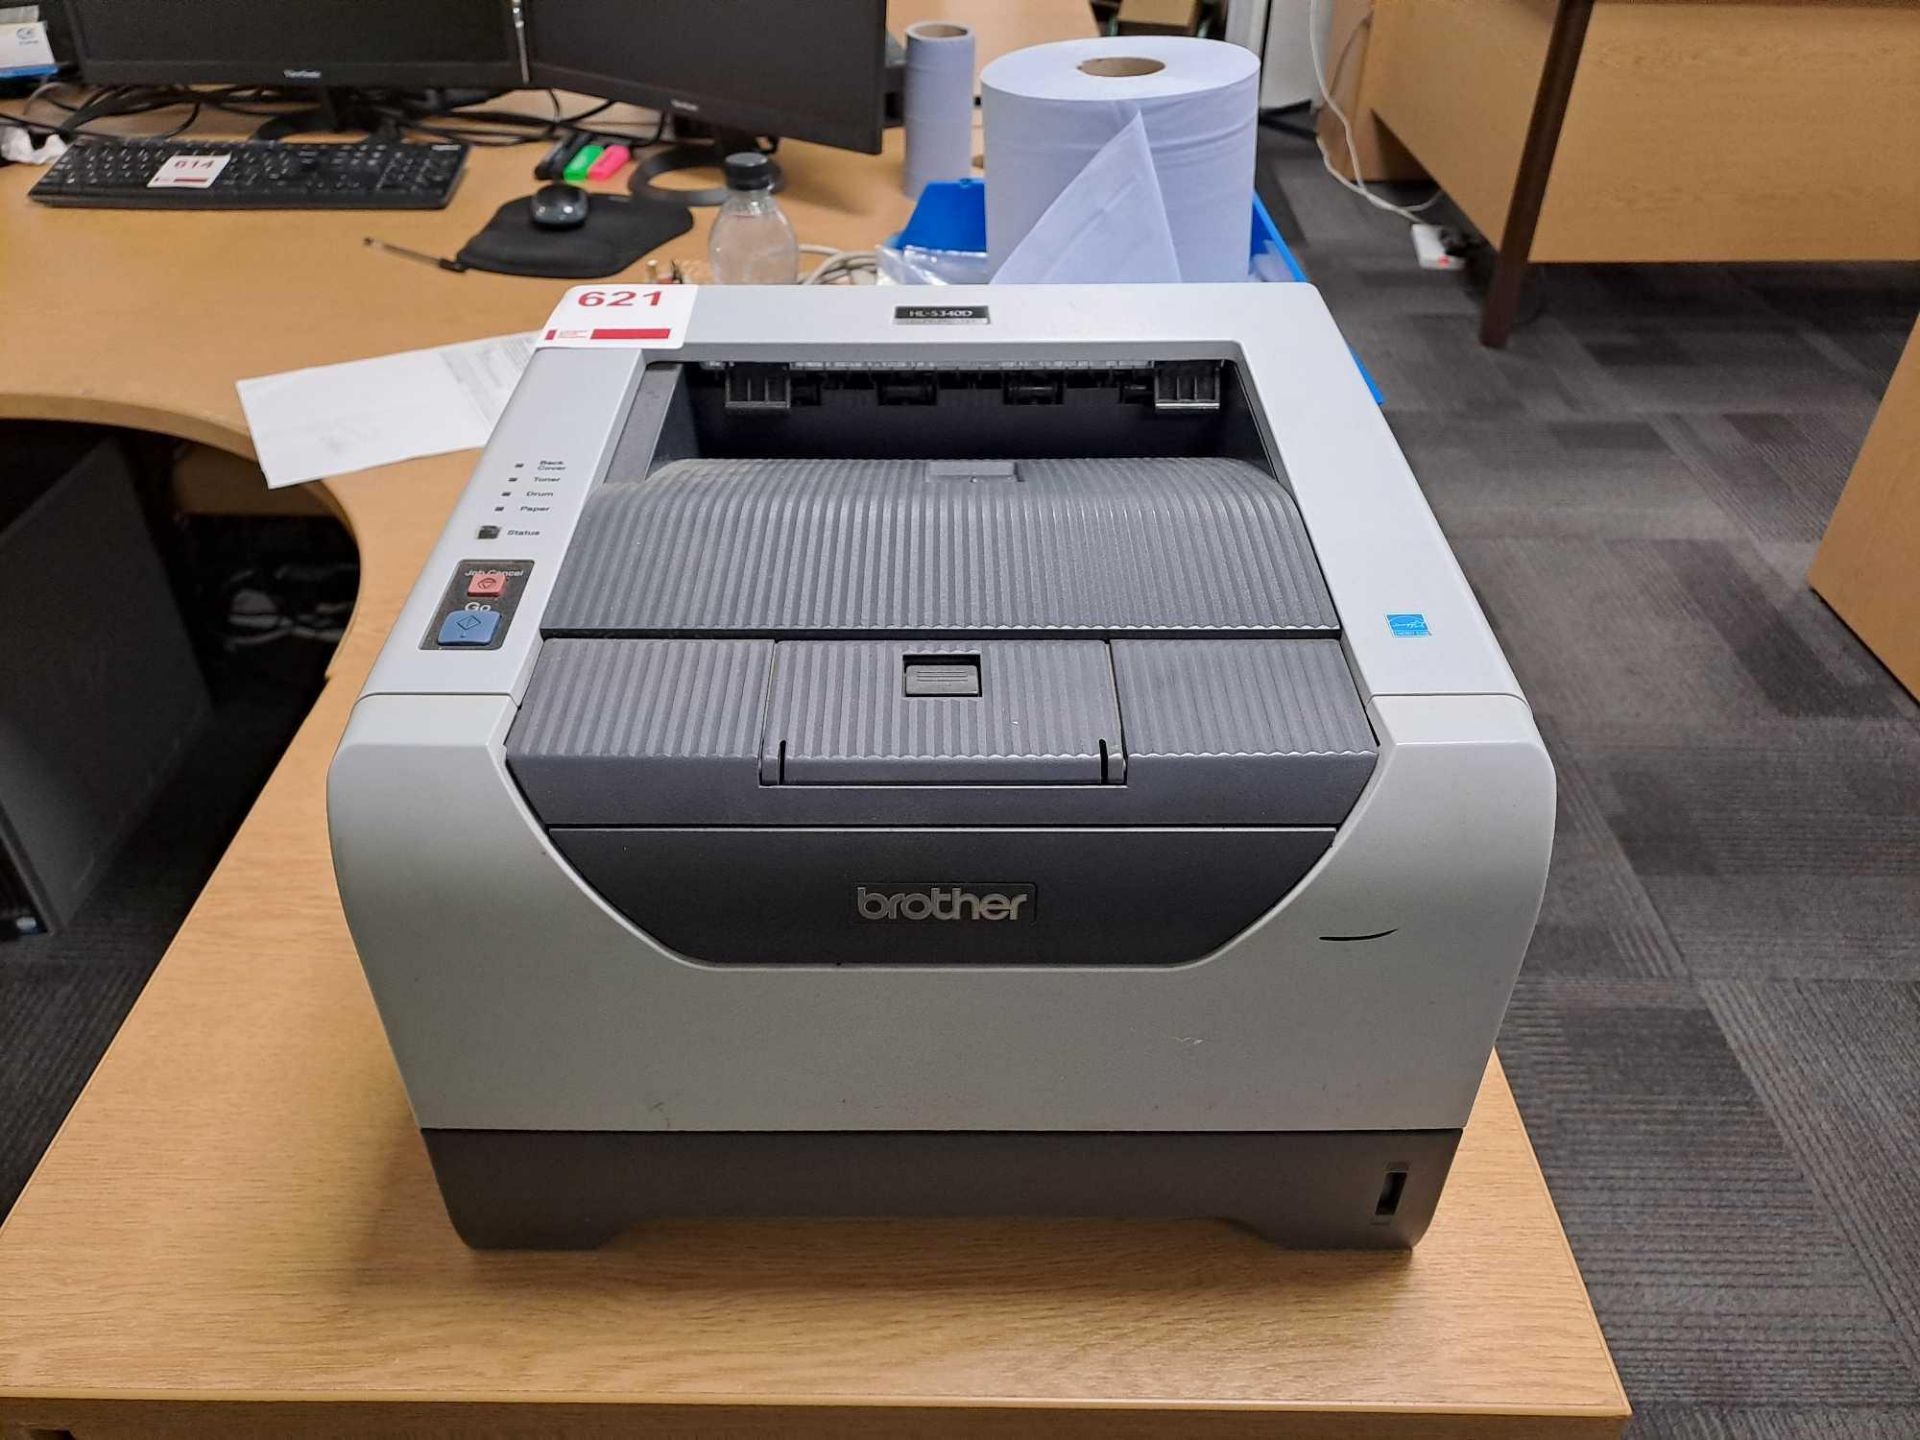 Brother HL-5340D laser printer, 240v